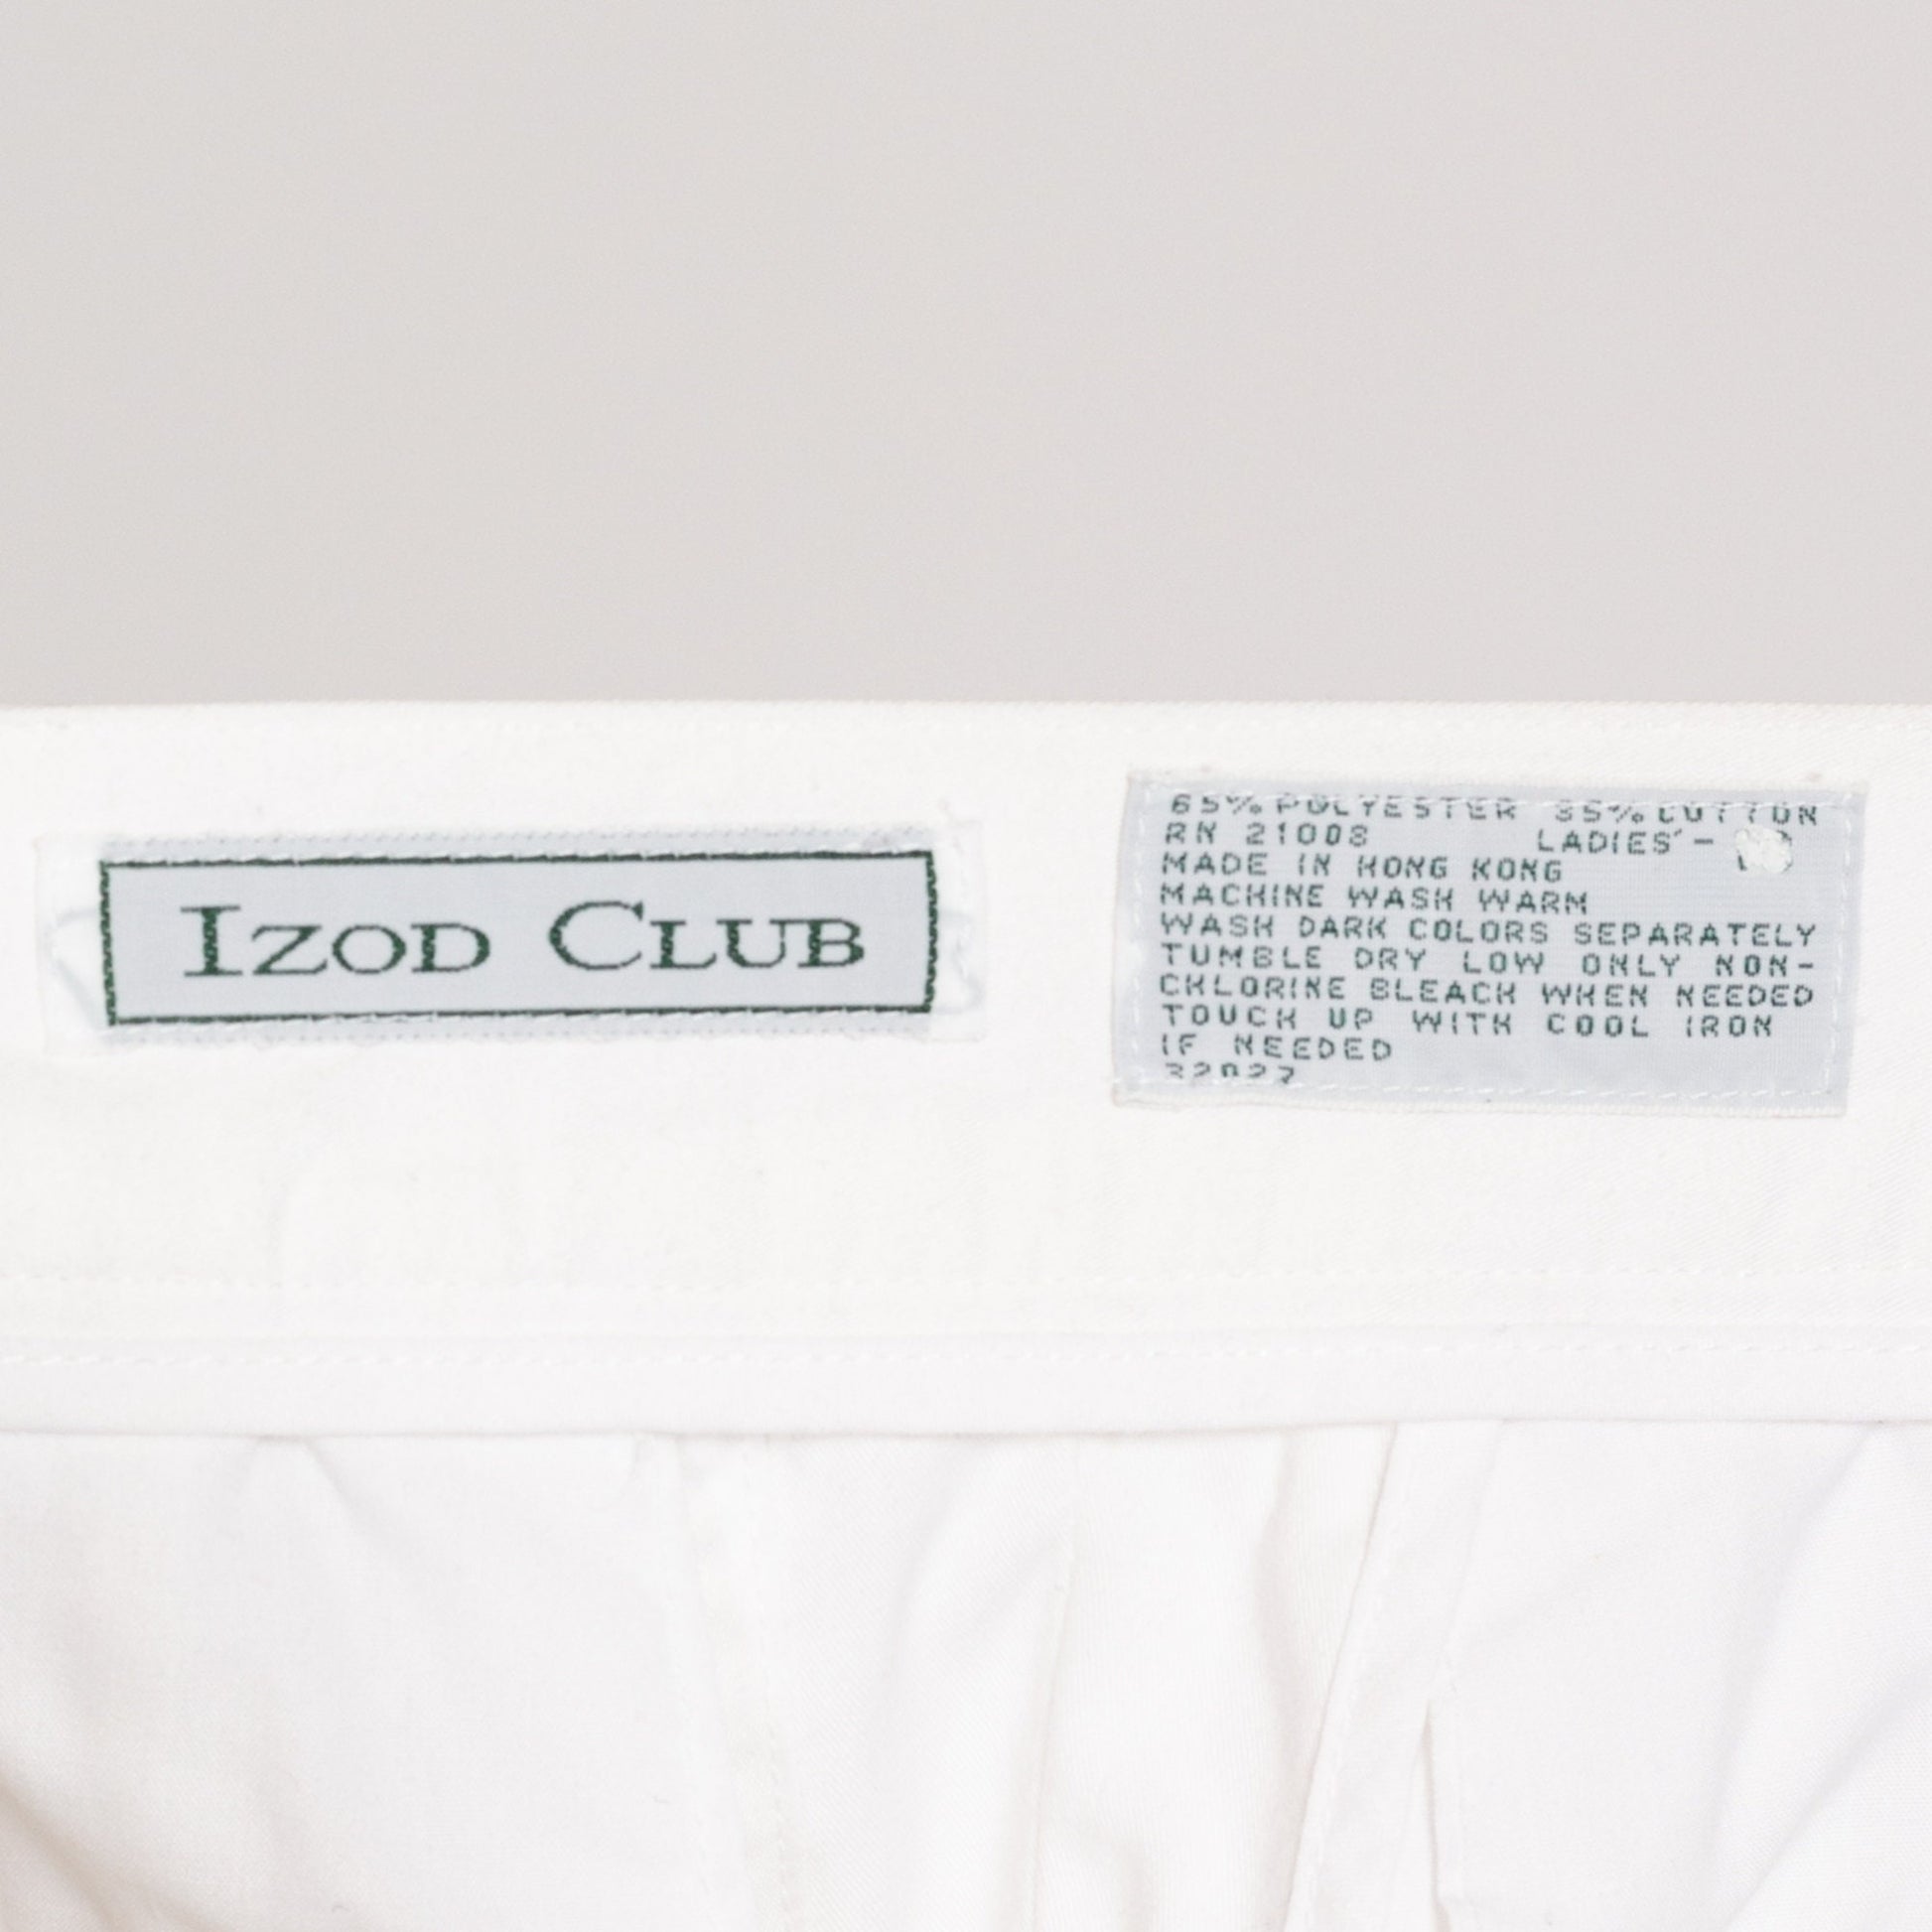 Medium 80s Izod White High Waisted Shorts 27.5" | Vintage Minimalist Pleated Mom Shorts